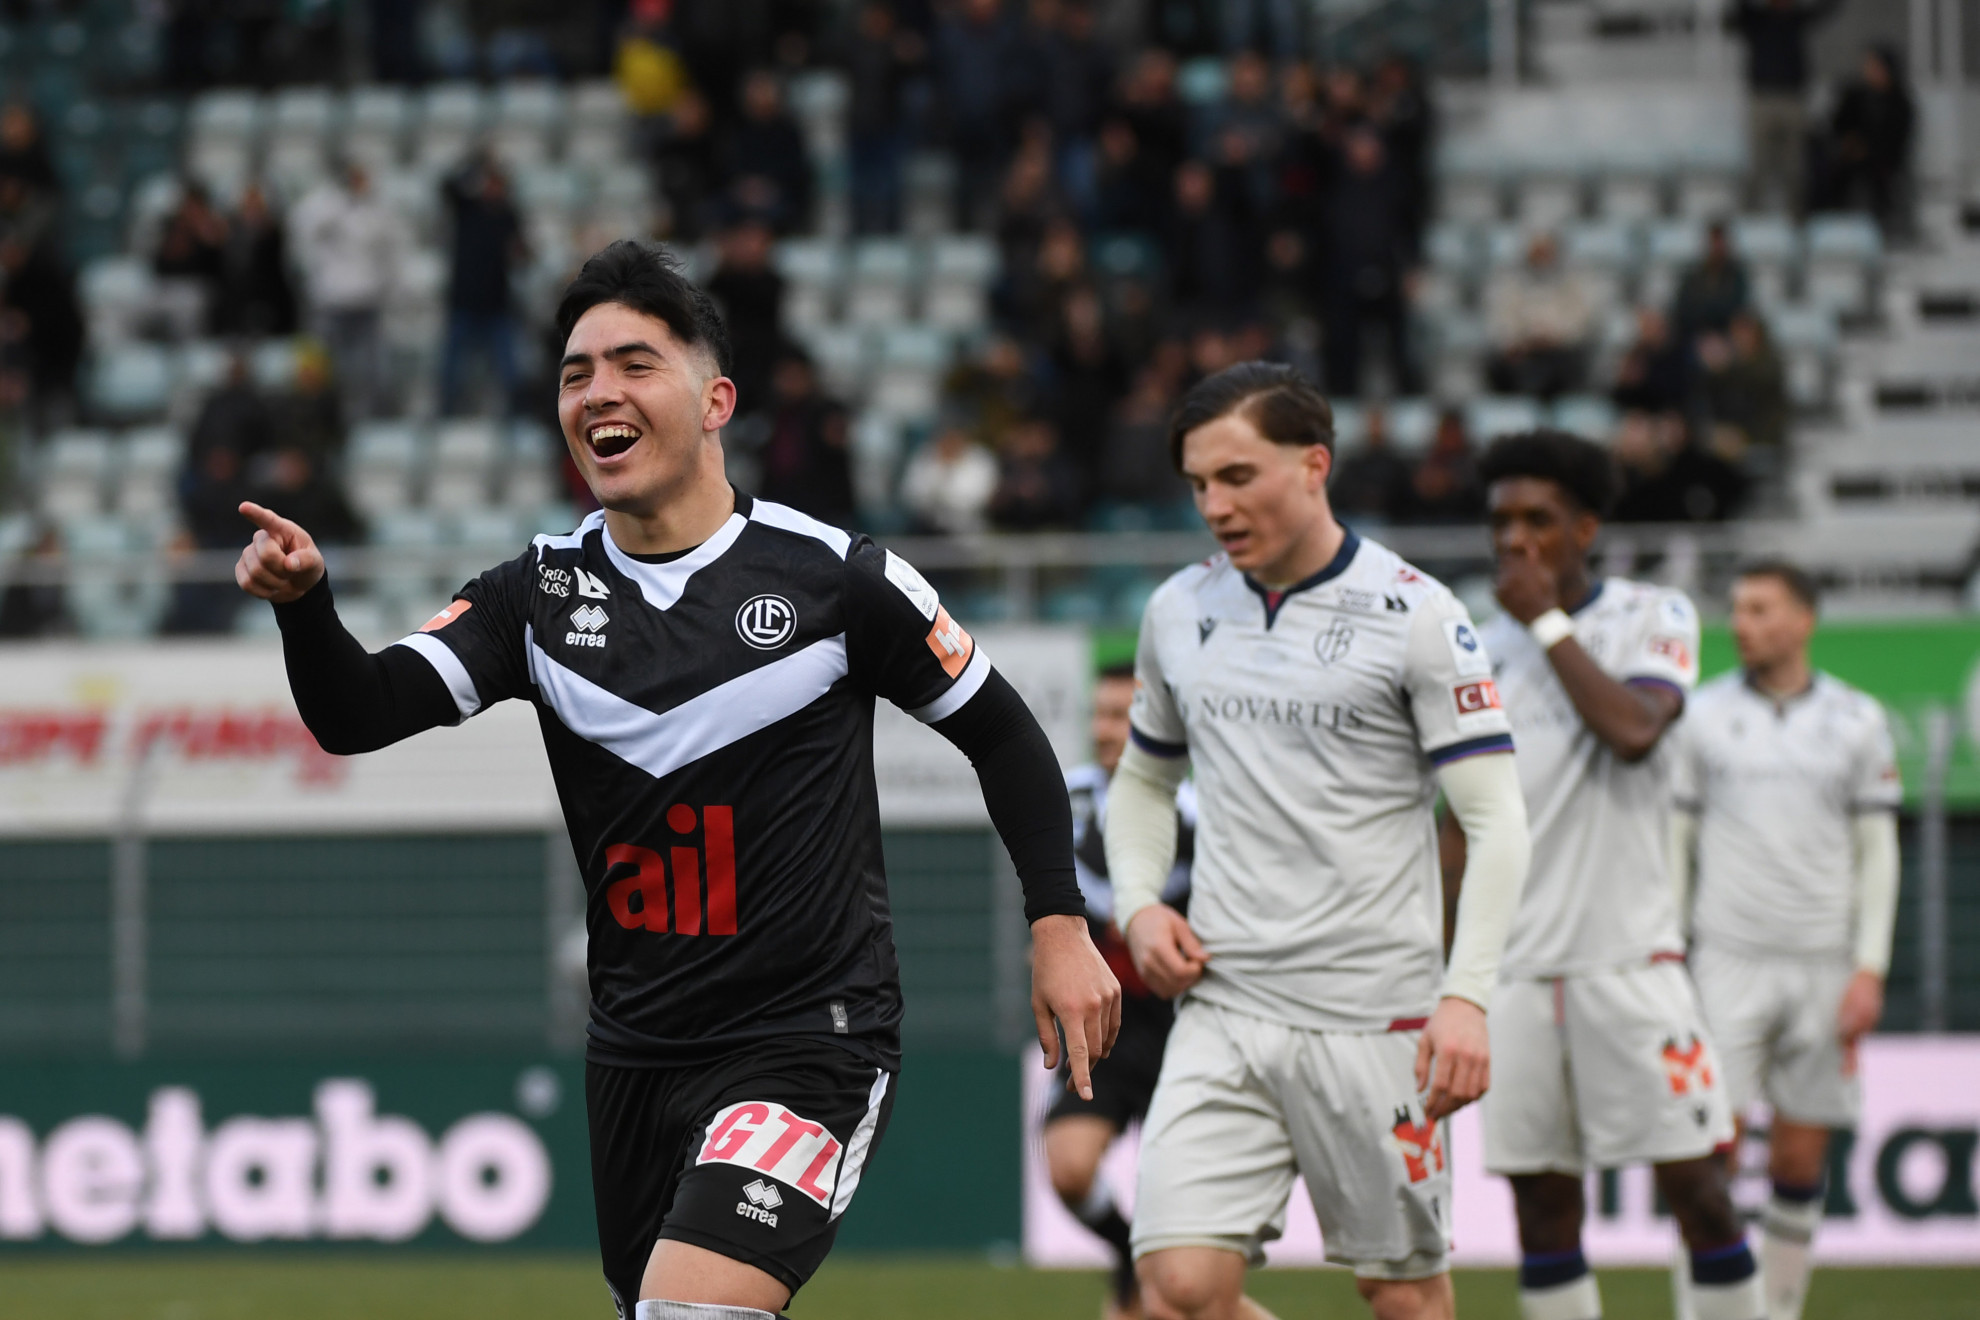 Super League: Il Lugano s'inchina al Losanna